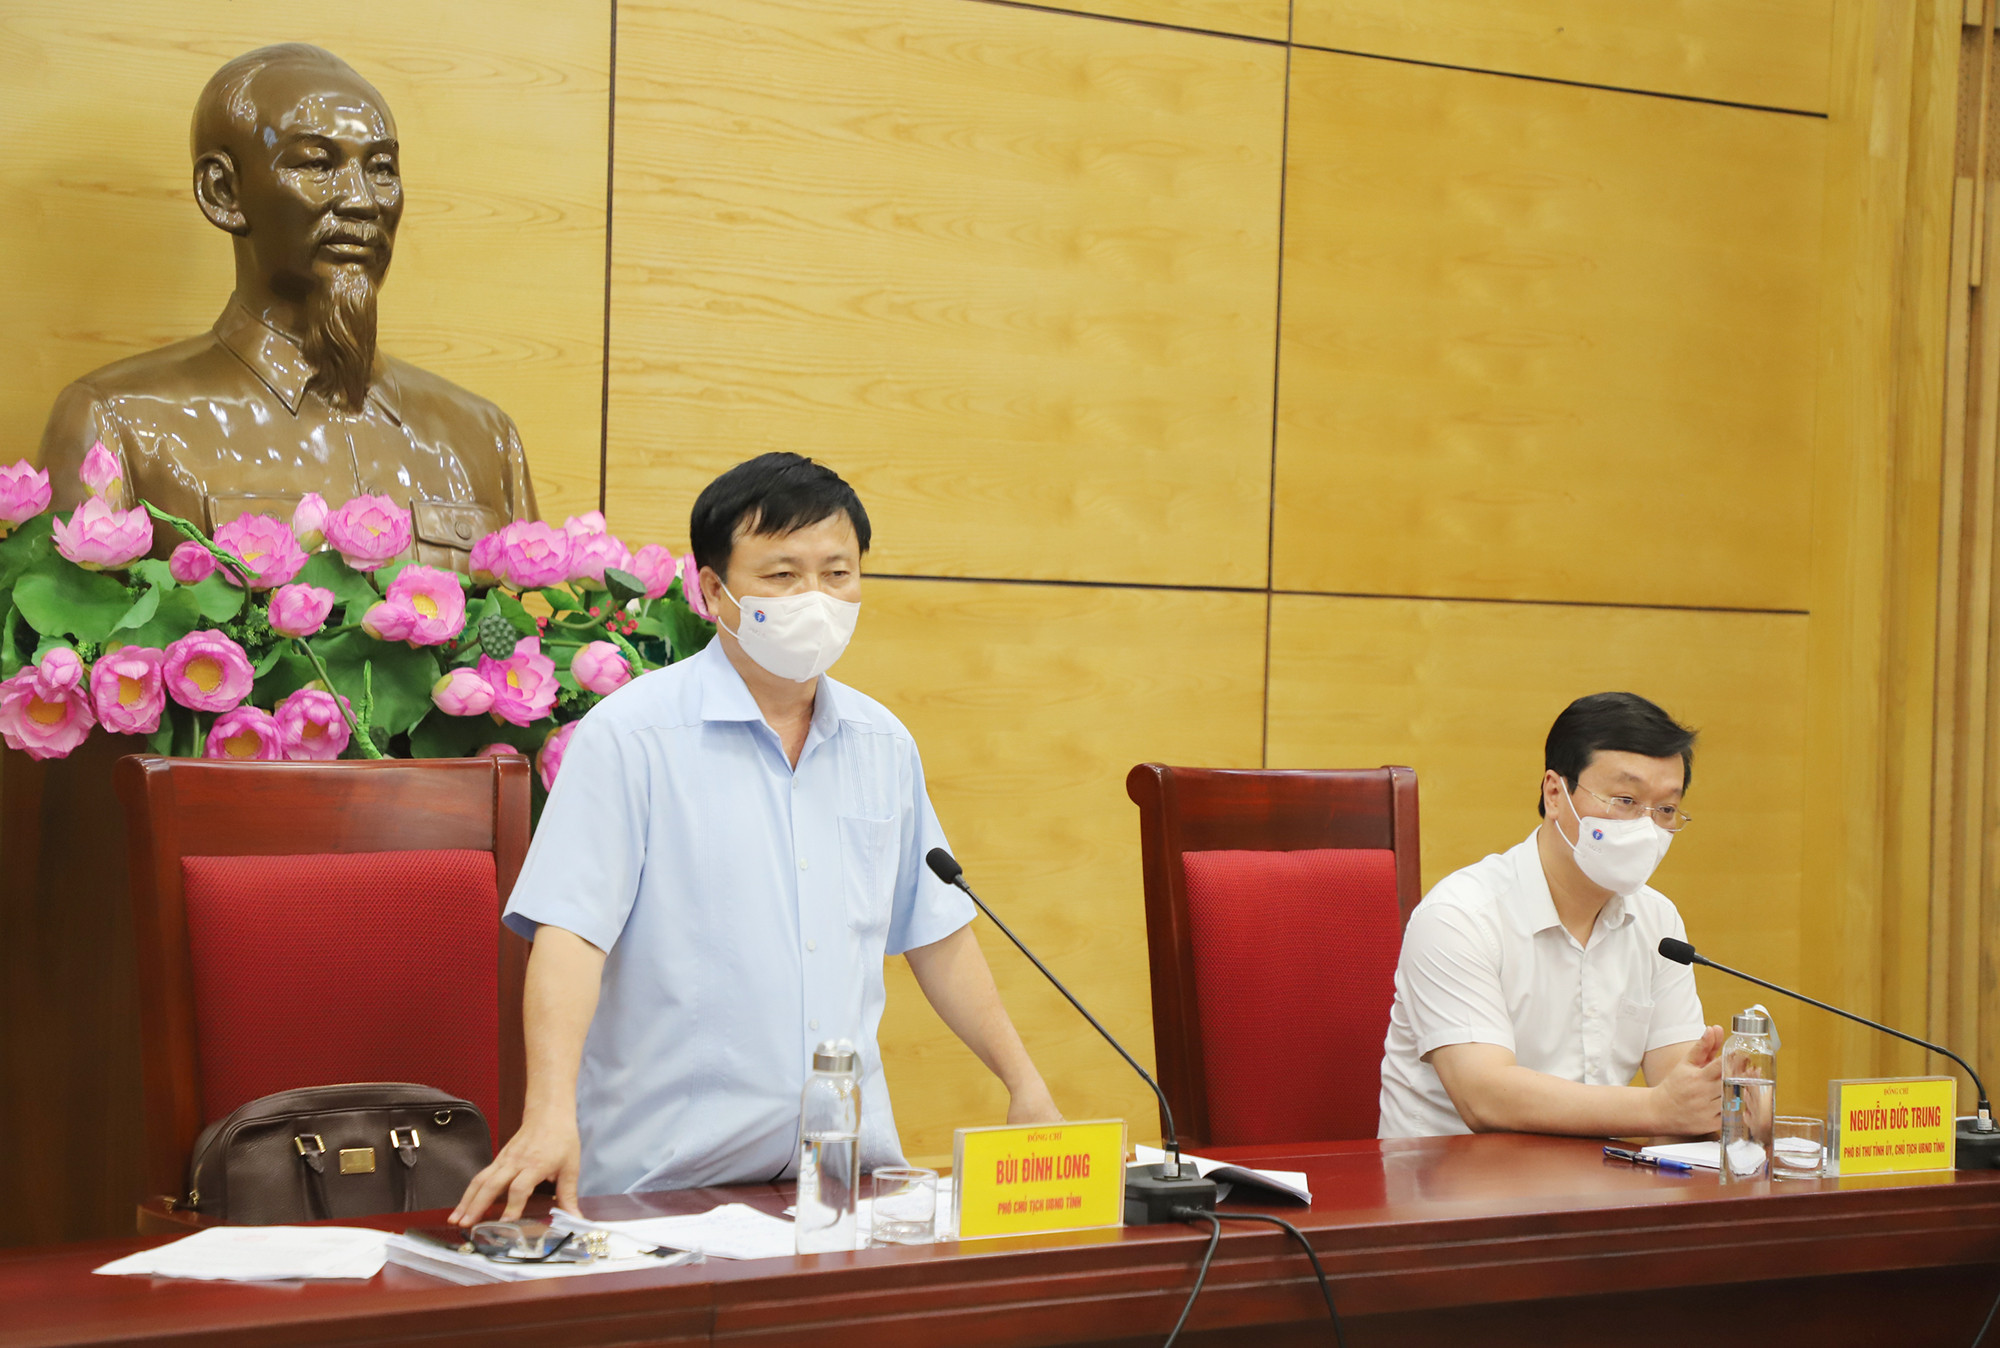 Đồng chí Bùi Đình Long - Phó Chủ tịch UBND tỉnh phát biểu tại cuộc họp. Ảnh: Phạm Bằng